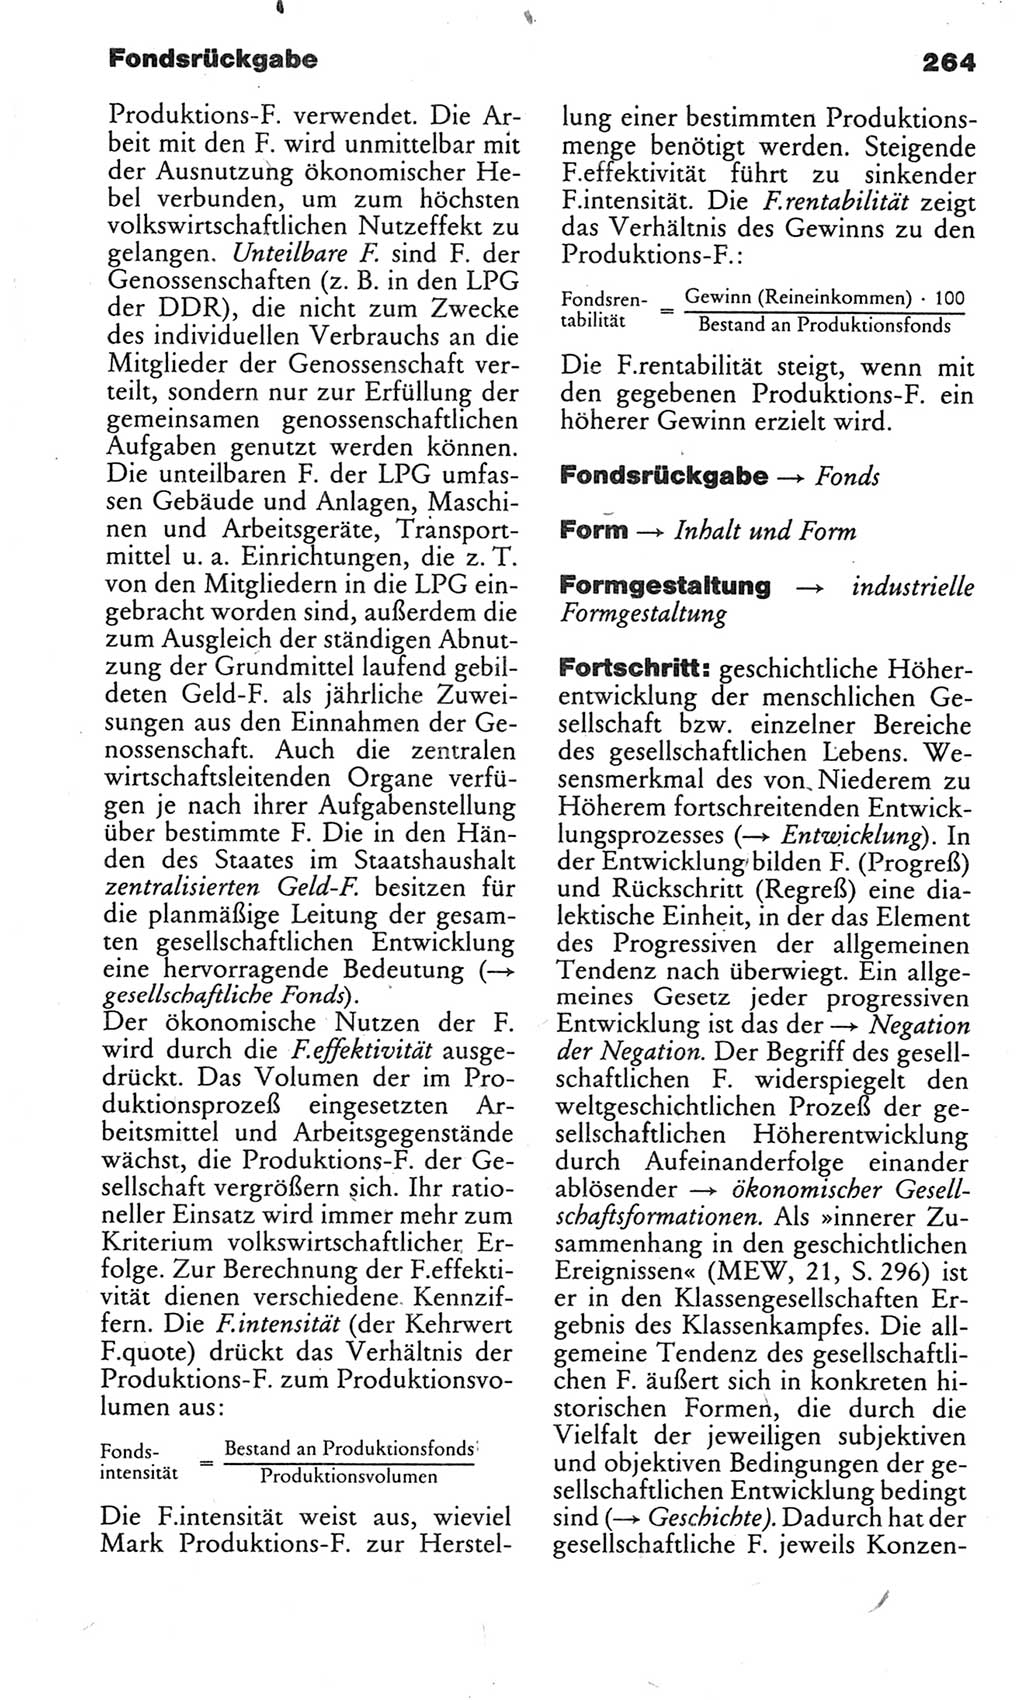 Kleines politisches Wörterbuch [Deutsche Demokratische Republik (DDR)] 1983, Seite 264 (Kl. pol. Wb. DDR 1983, S. 264)